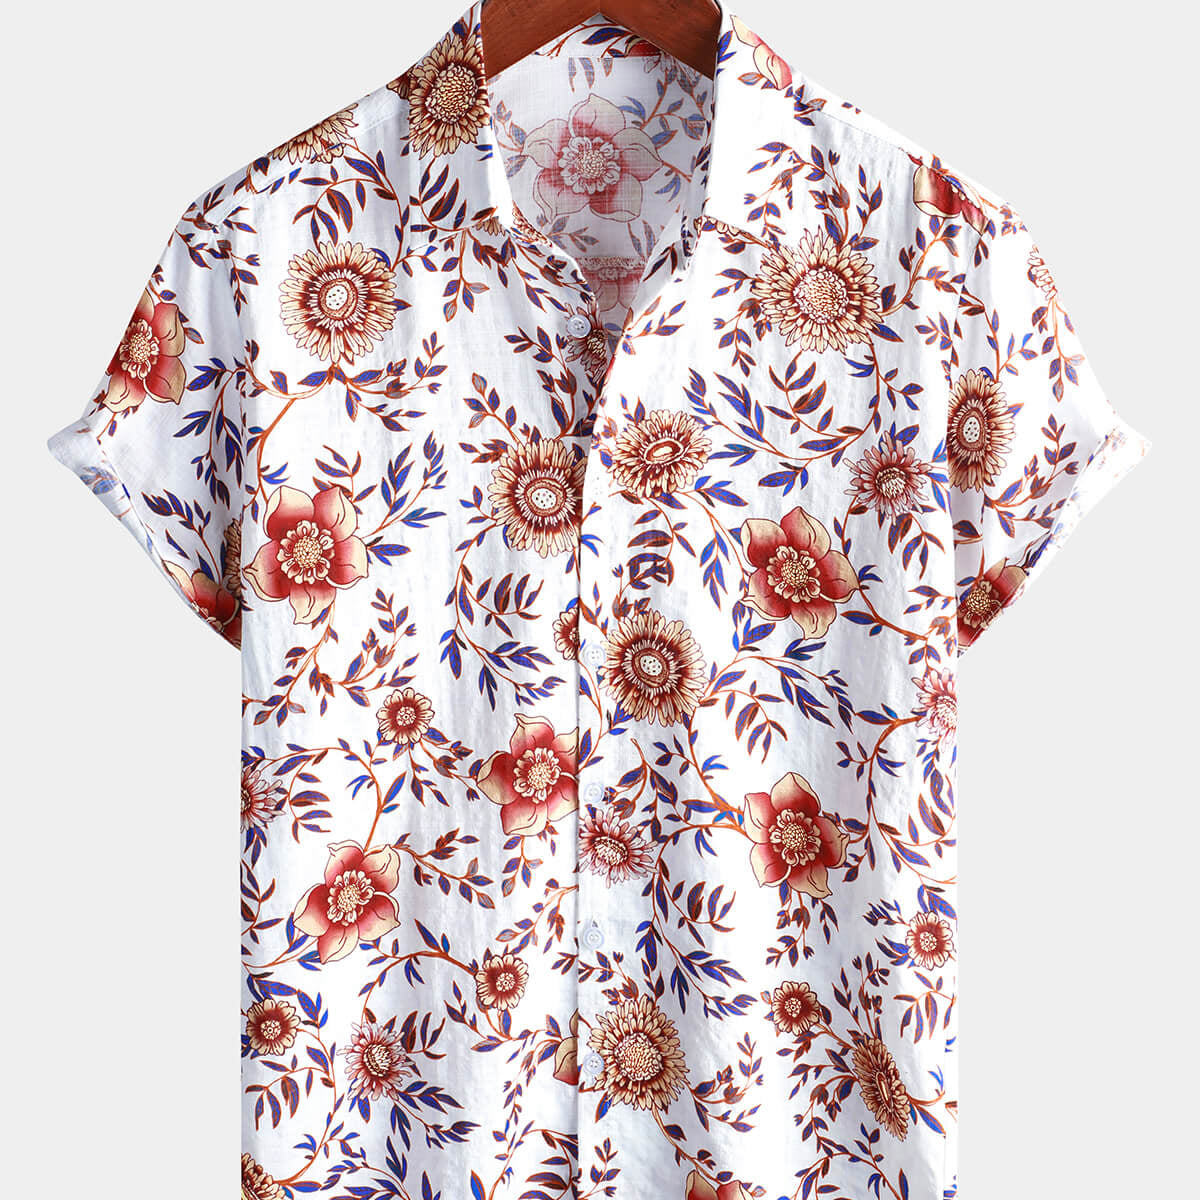 Men's Floral White Summer Beach Short Sleeve Shirt